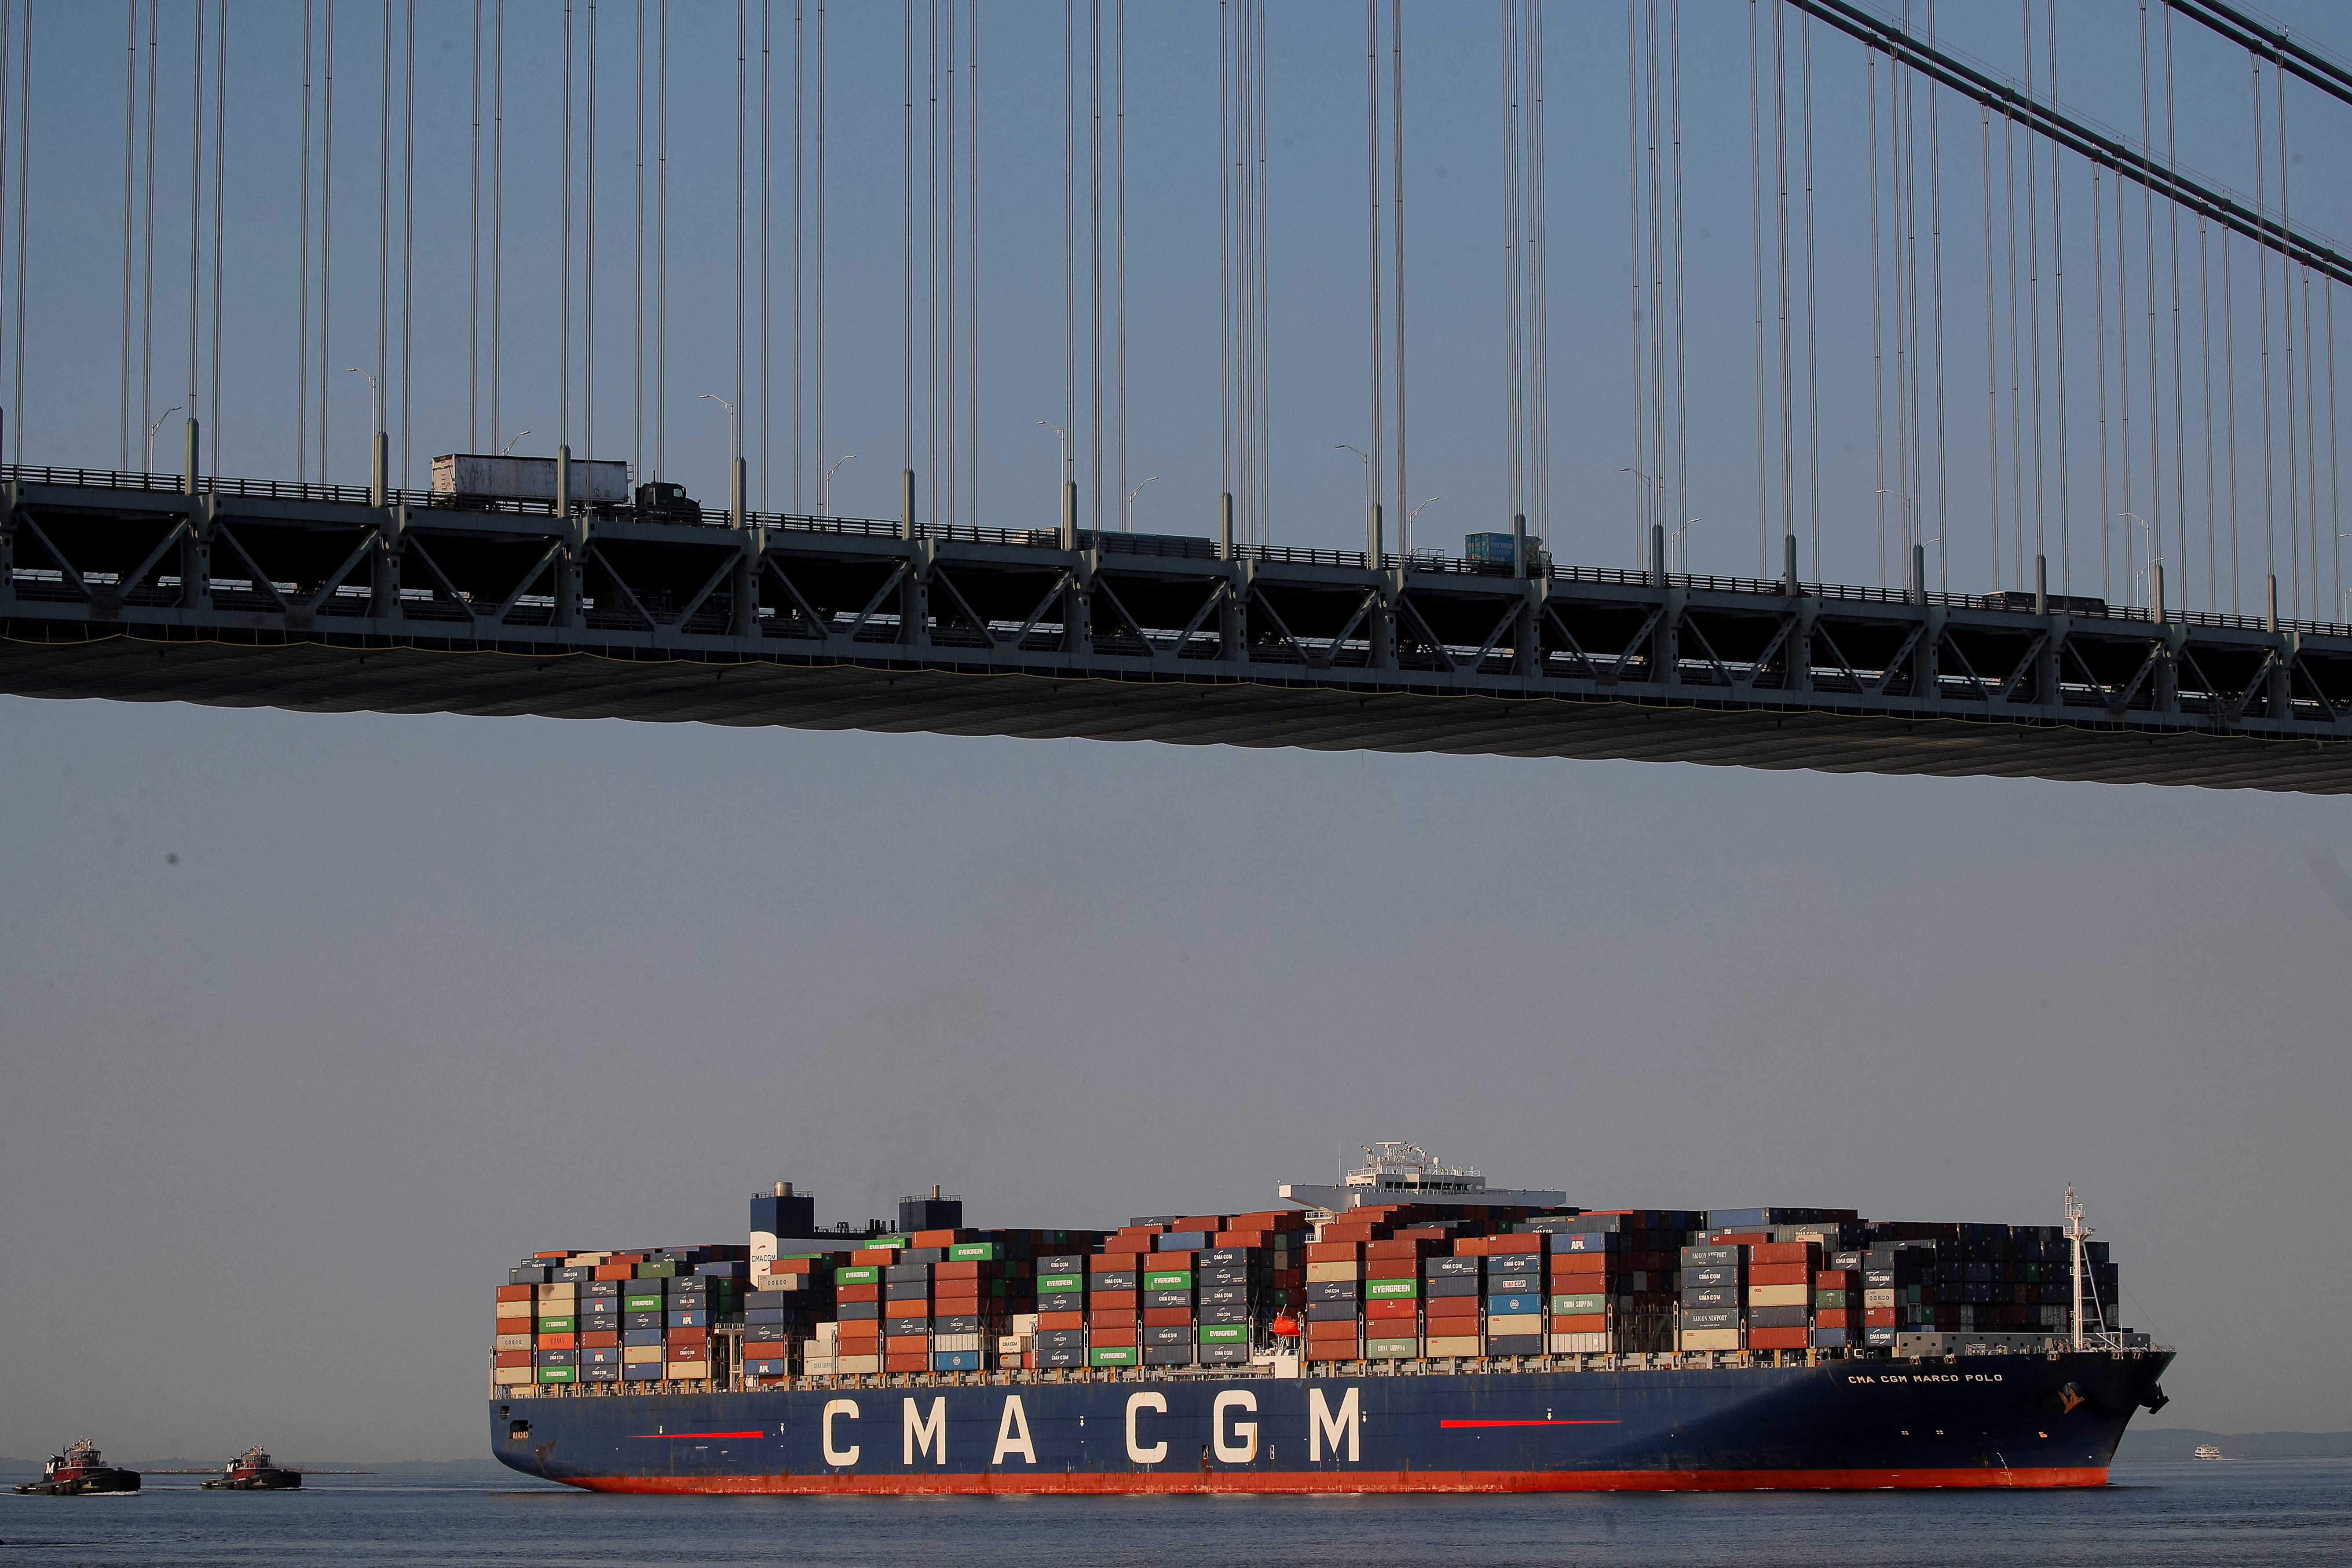 The CMA CGM Marco Polo container ship passes under the Verrazzano-Narrows Bridge, to enter New York Harbor